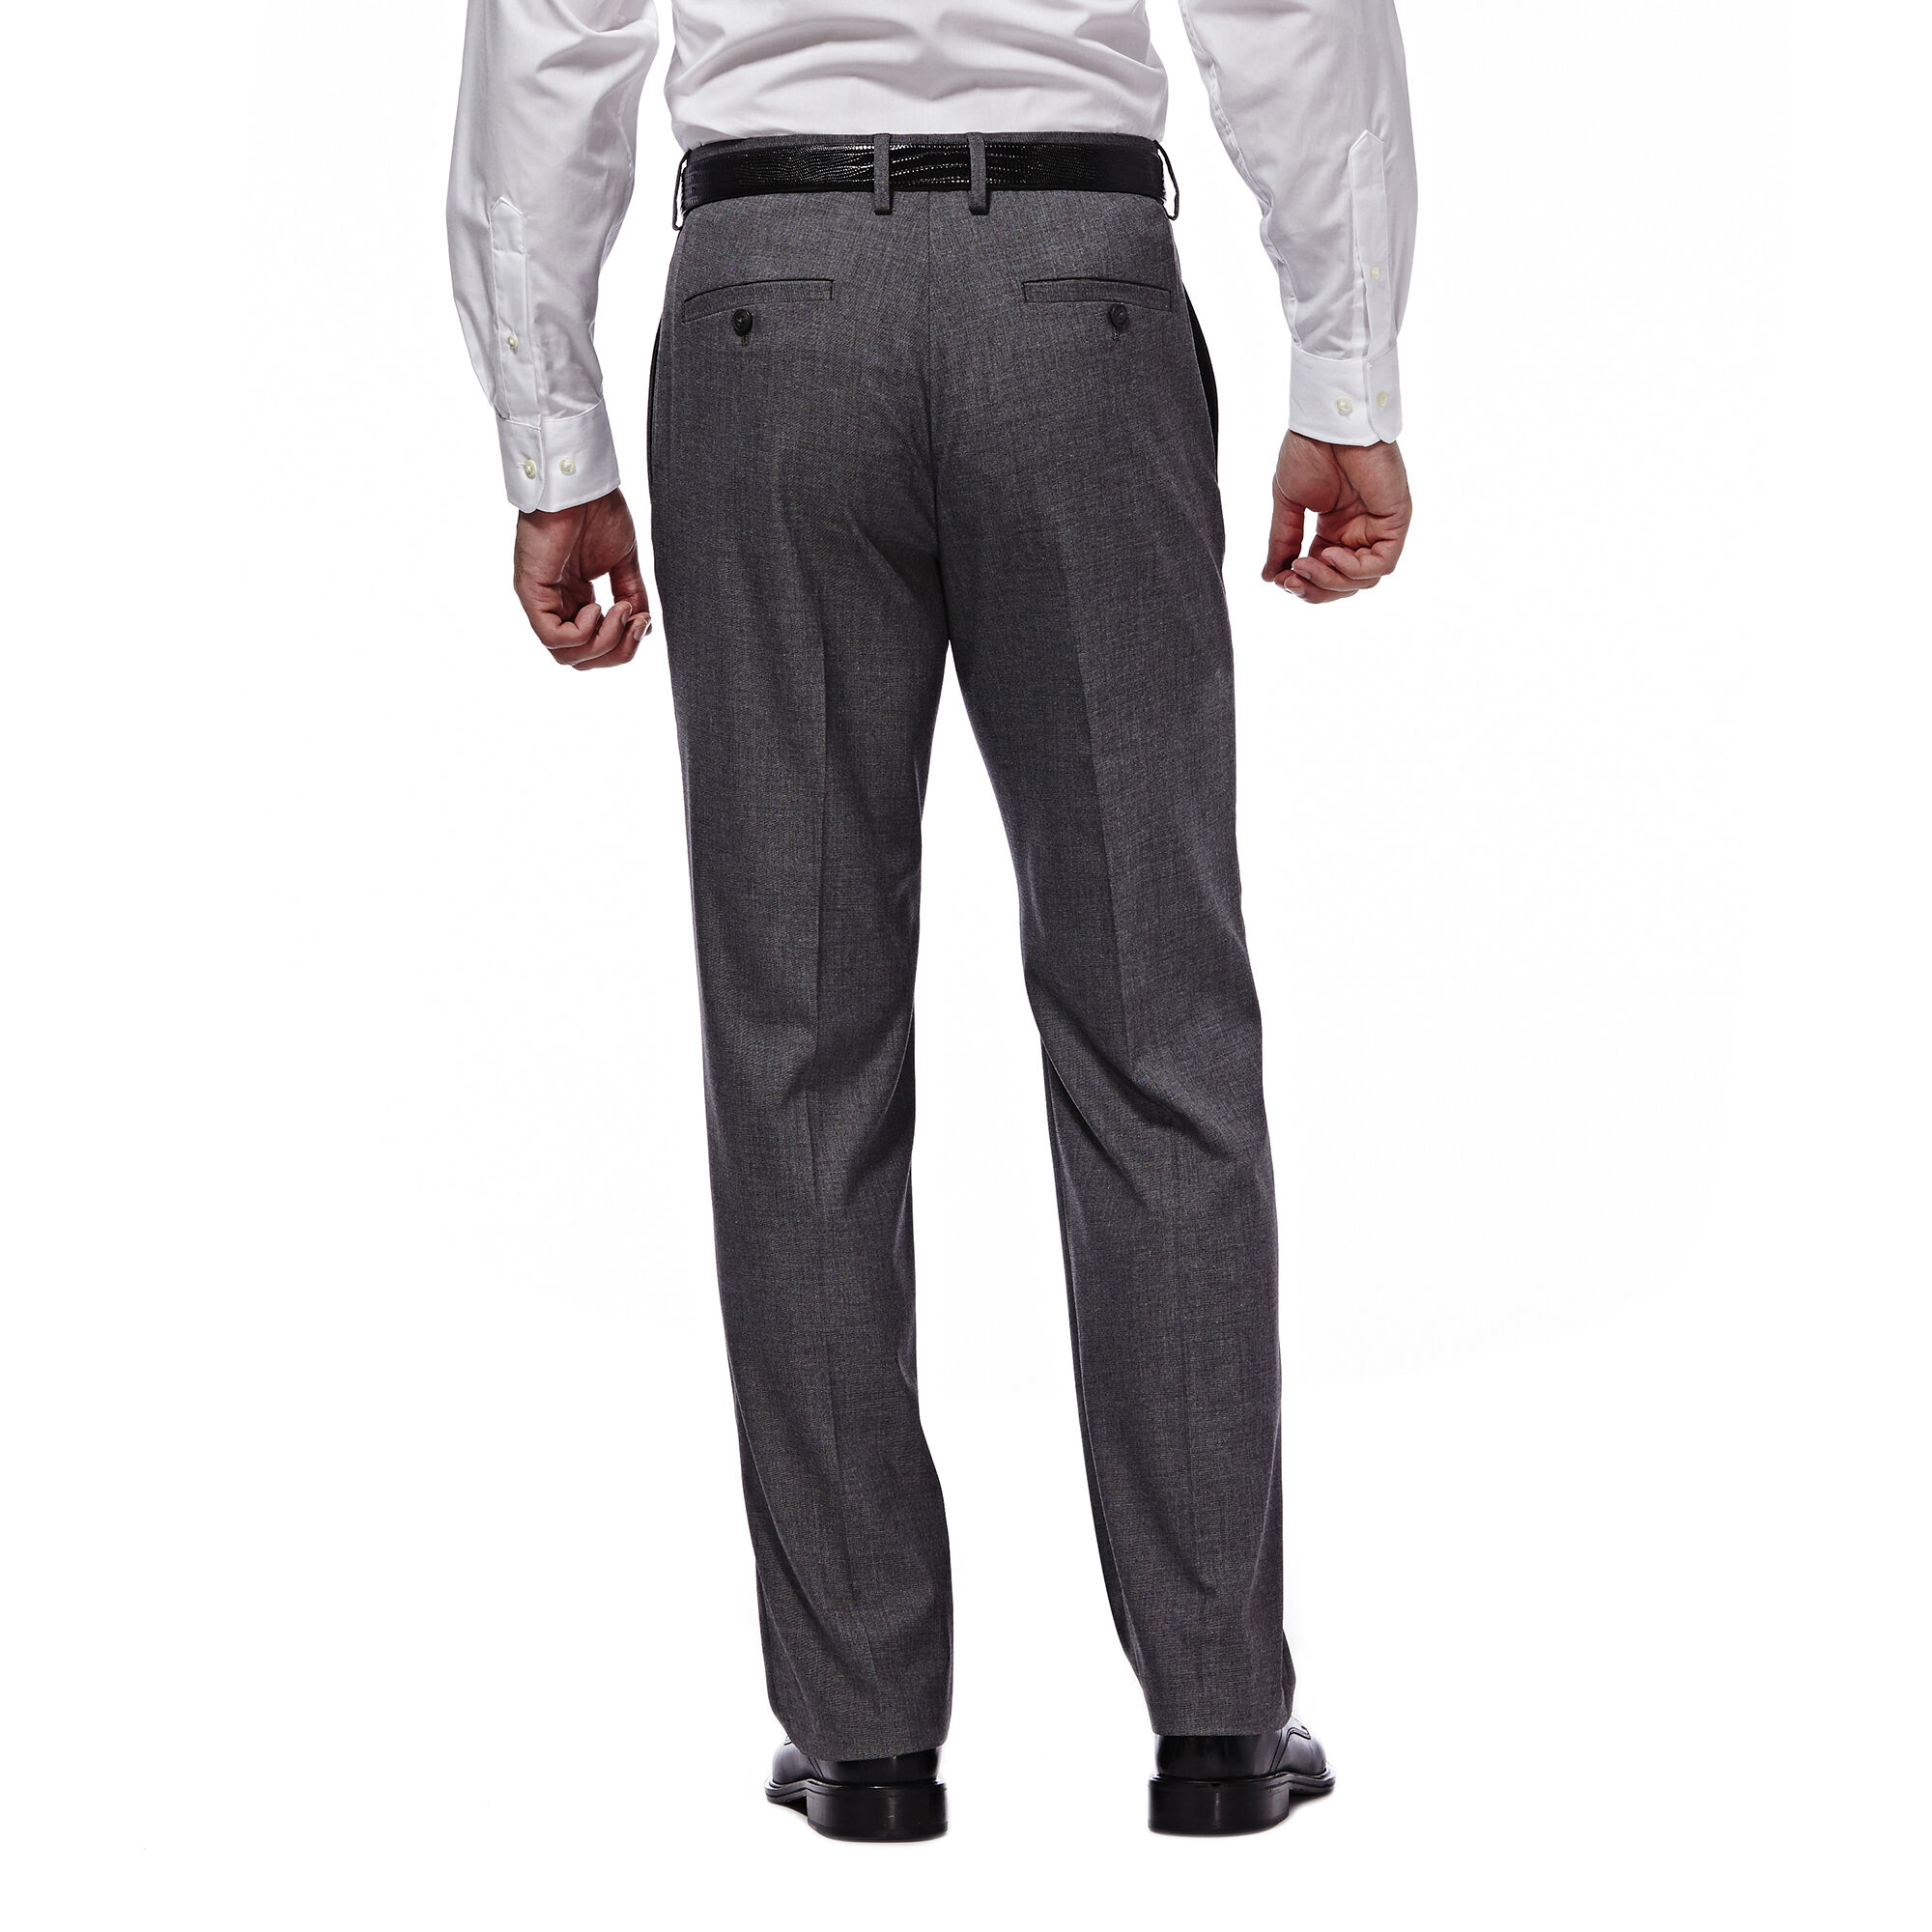 J.M. Haggar Premium Stretch Suit Separates